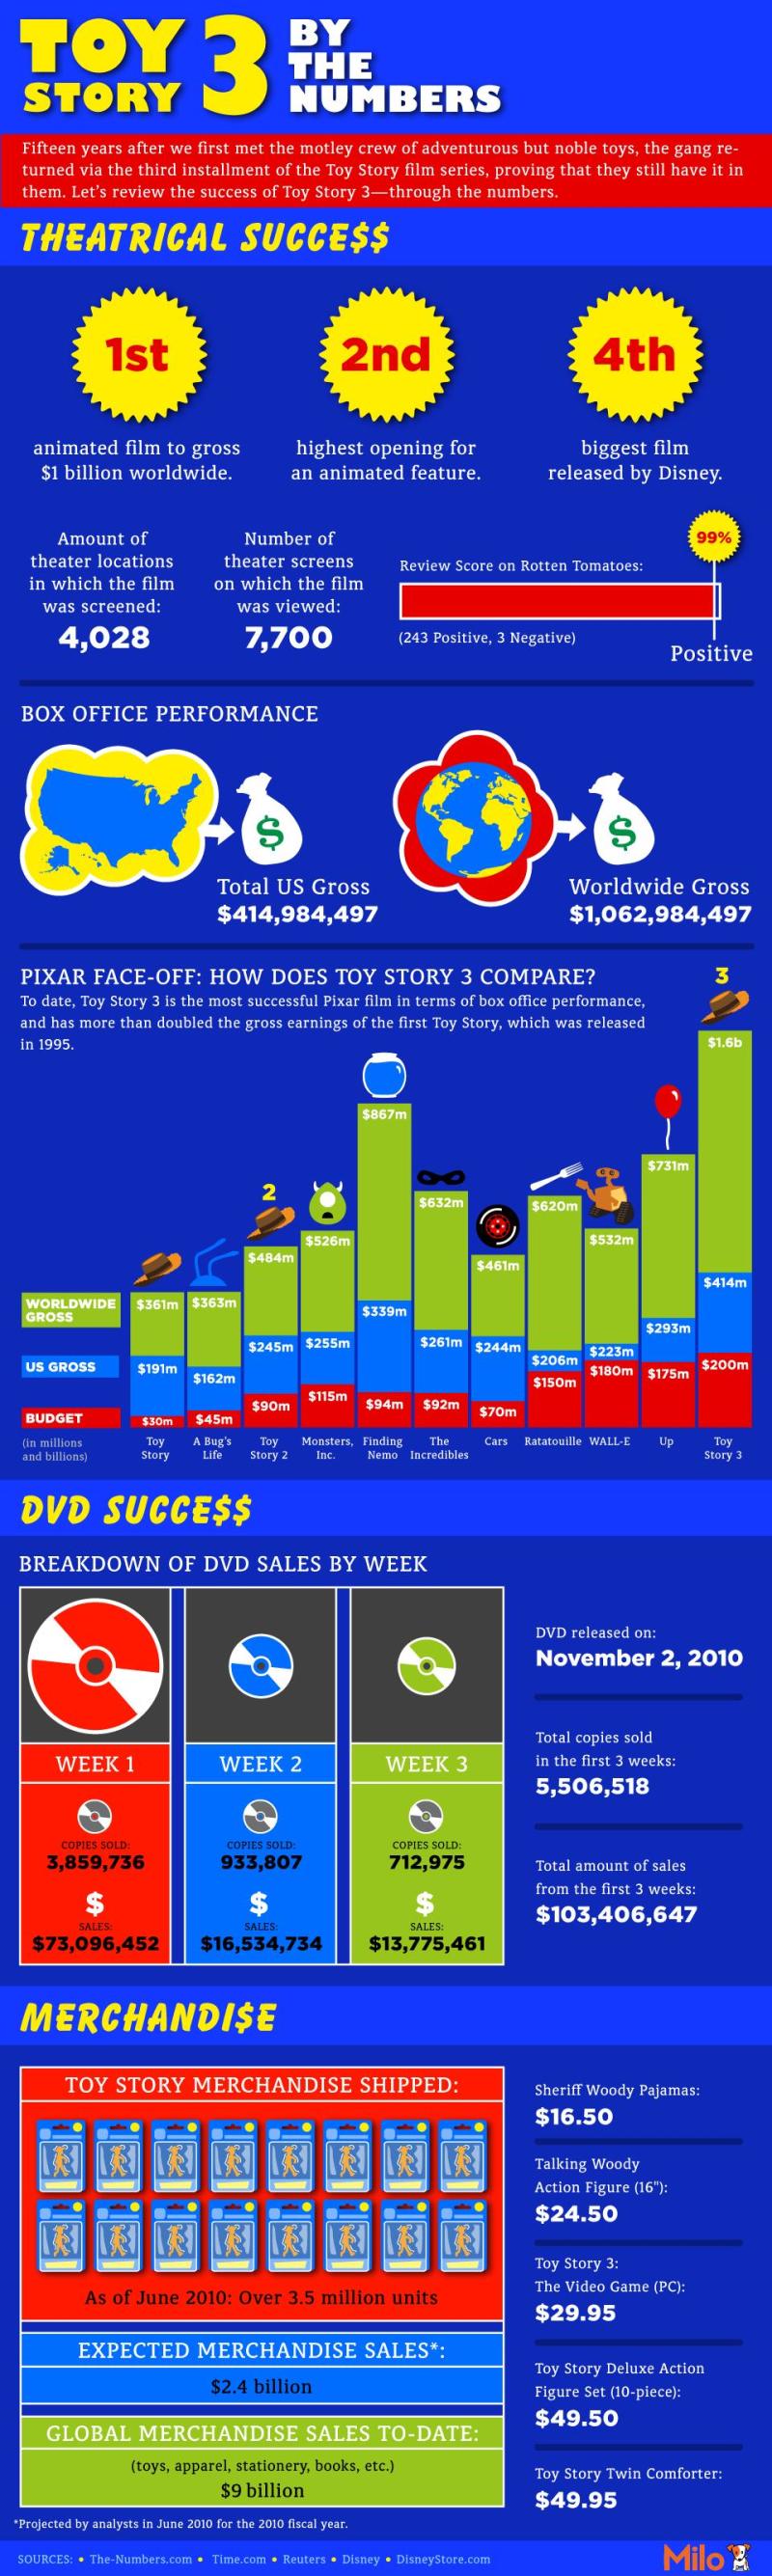 Het succes van Toy Story 3 in cijfers